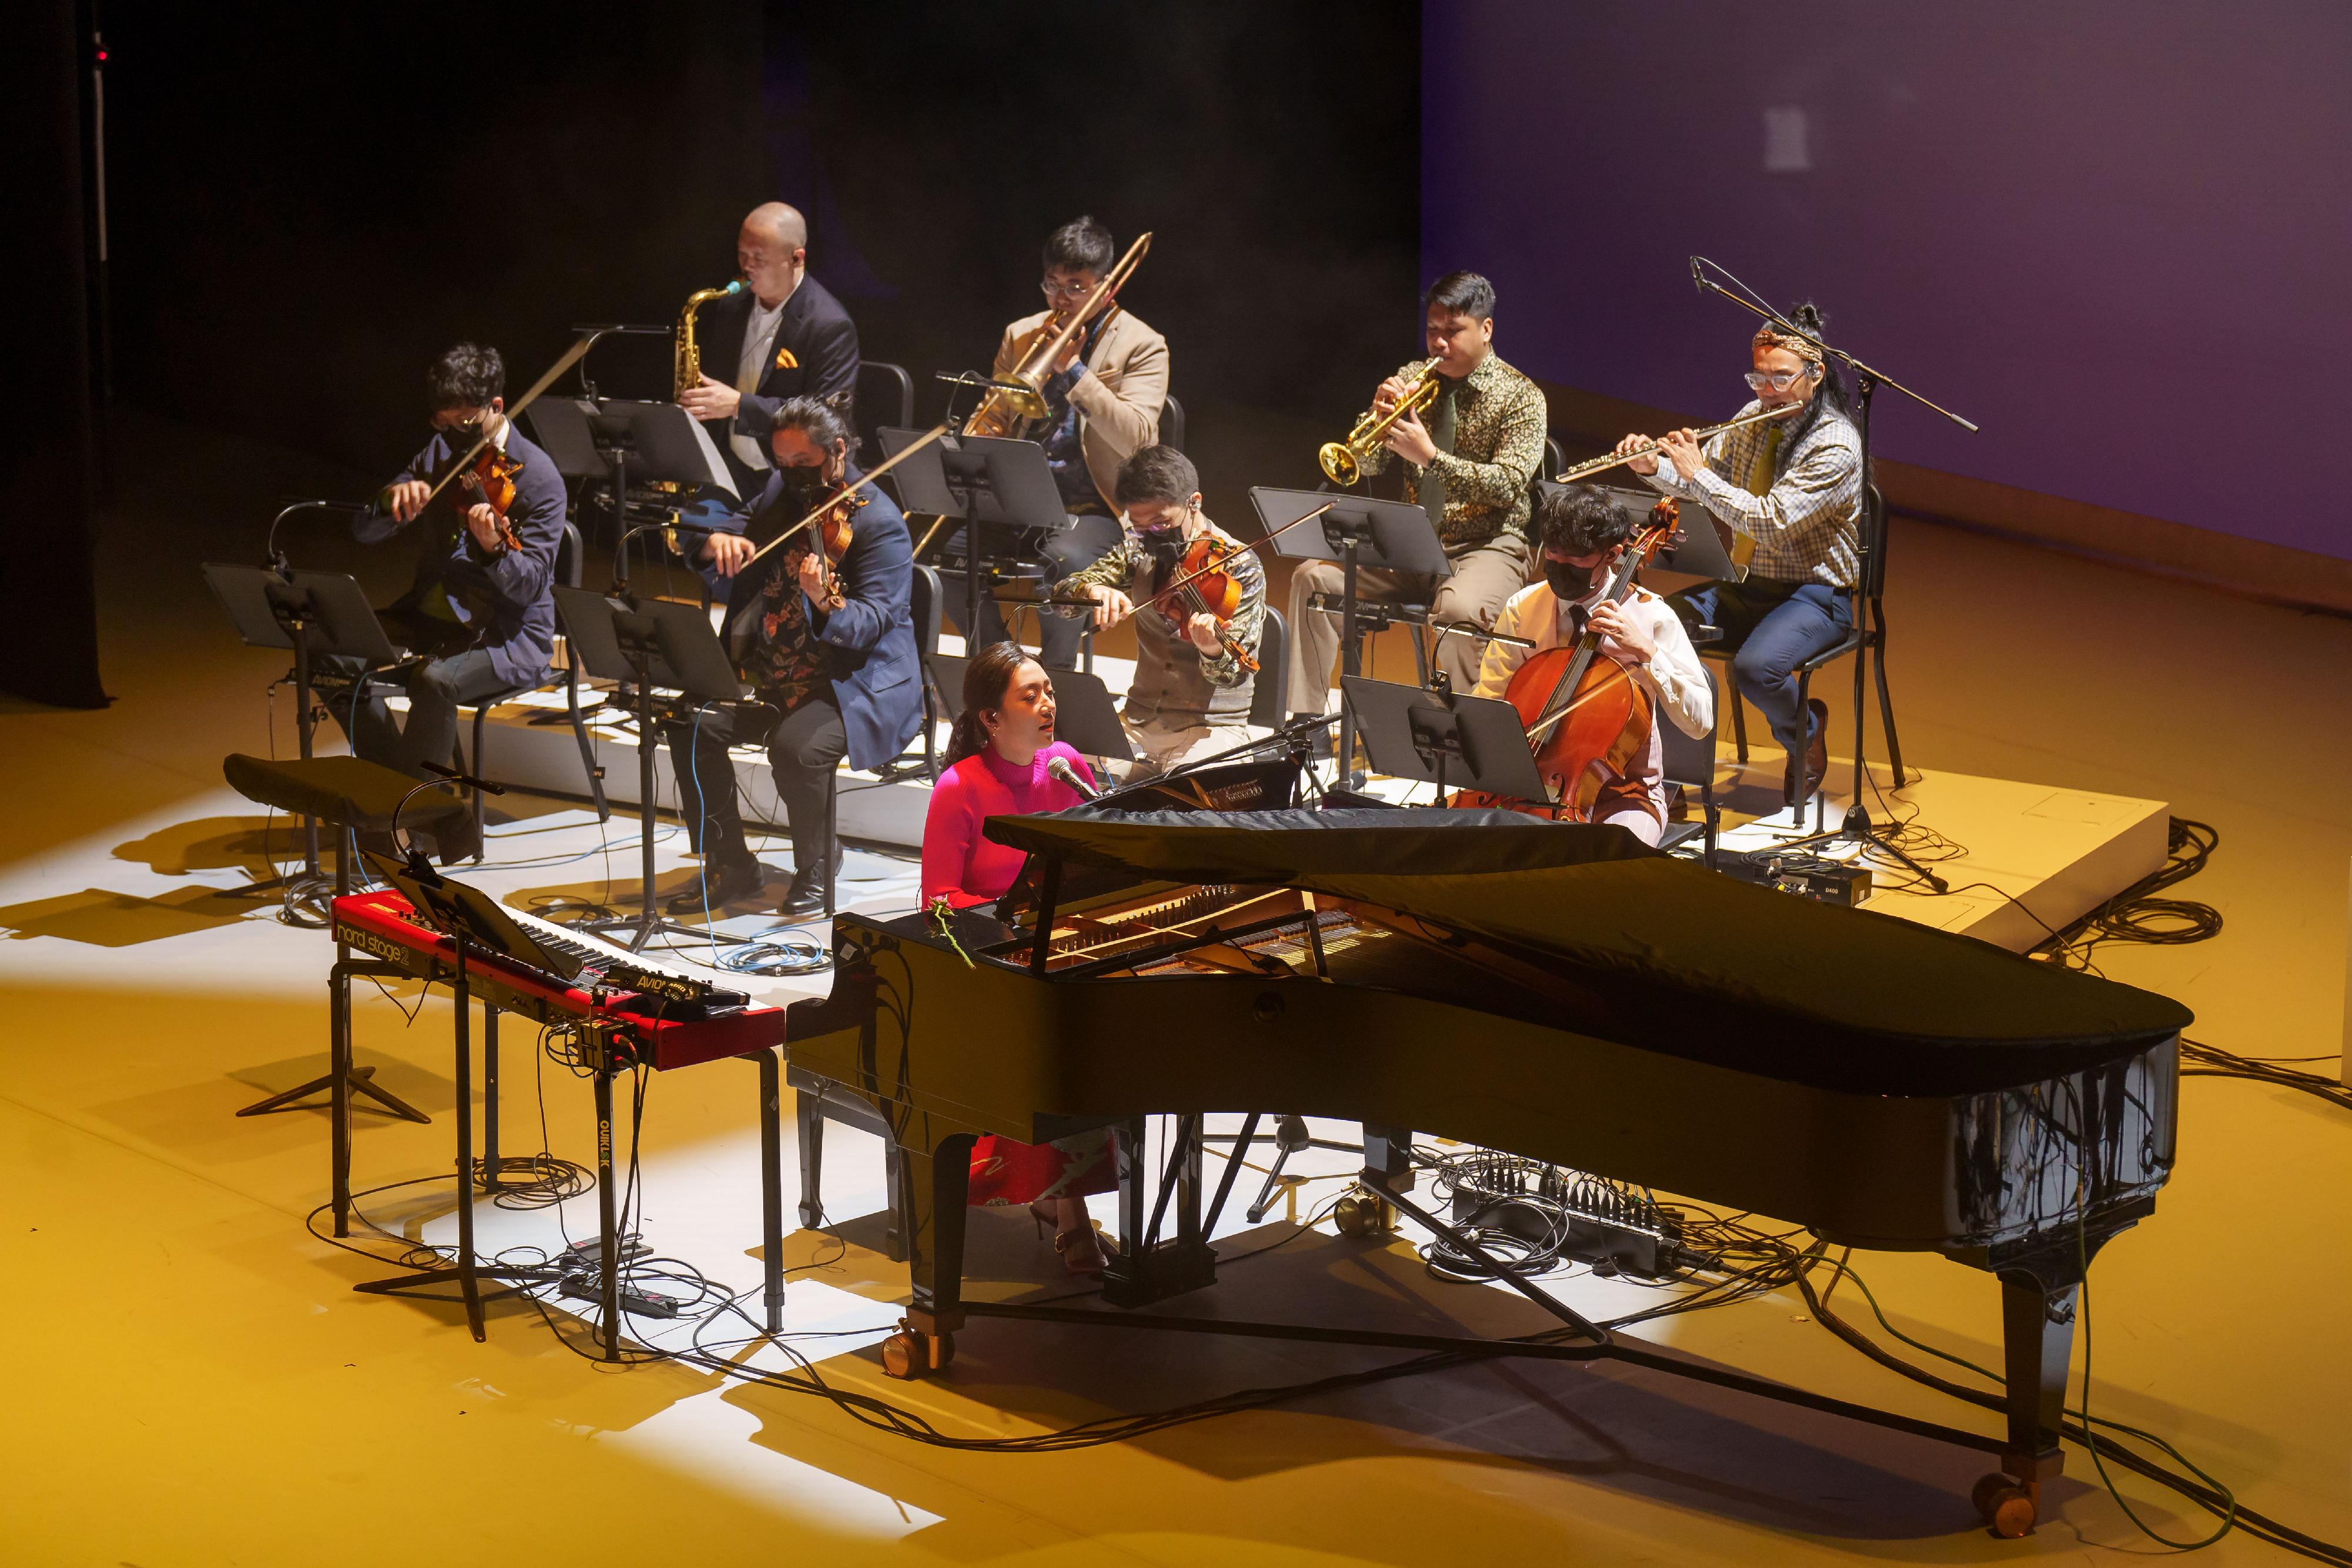 康樂及文化事務署將於十一月二十日下午在元朗劇院舉行「25．35演藝嘉年華」。一眾藝術家及表演團體將獻上多項免費演藝活動，歡迎市民參與。圖示表演團體Jazzical by Music Lab，他們將為觀眾帶來爵士風格的古典音樂演出。